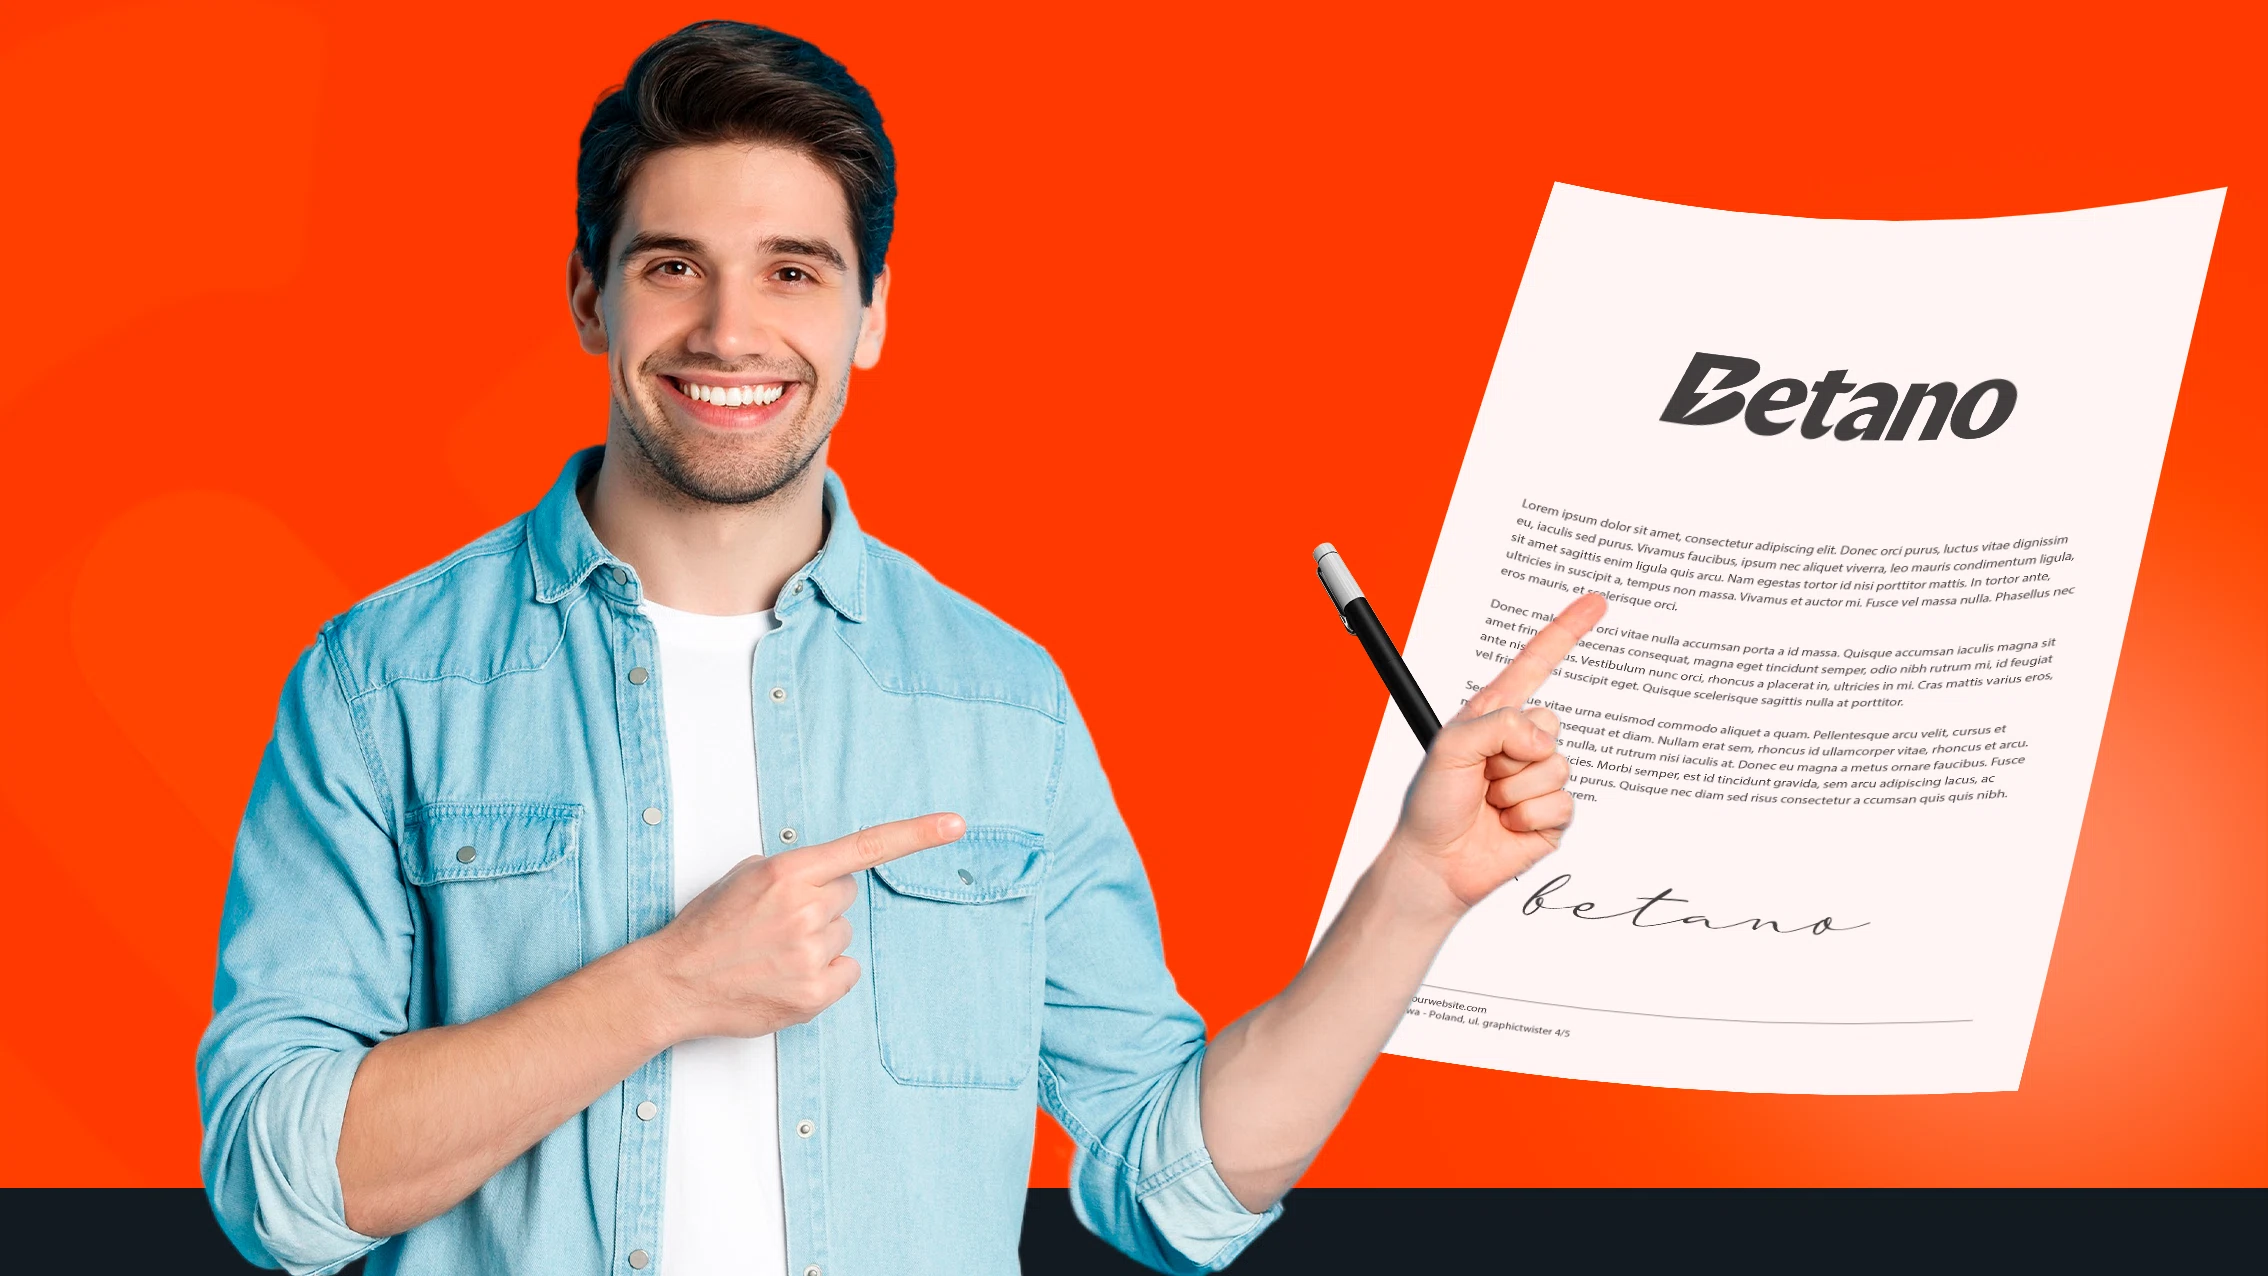 Imagem mostra homem sorrindo e apontando para um contrato assinado com a Betano